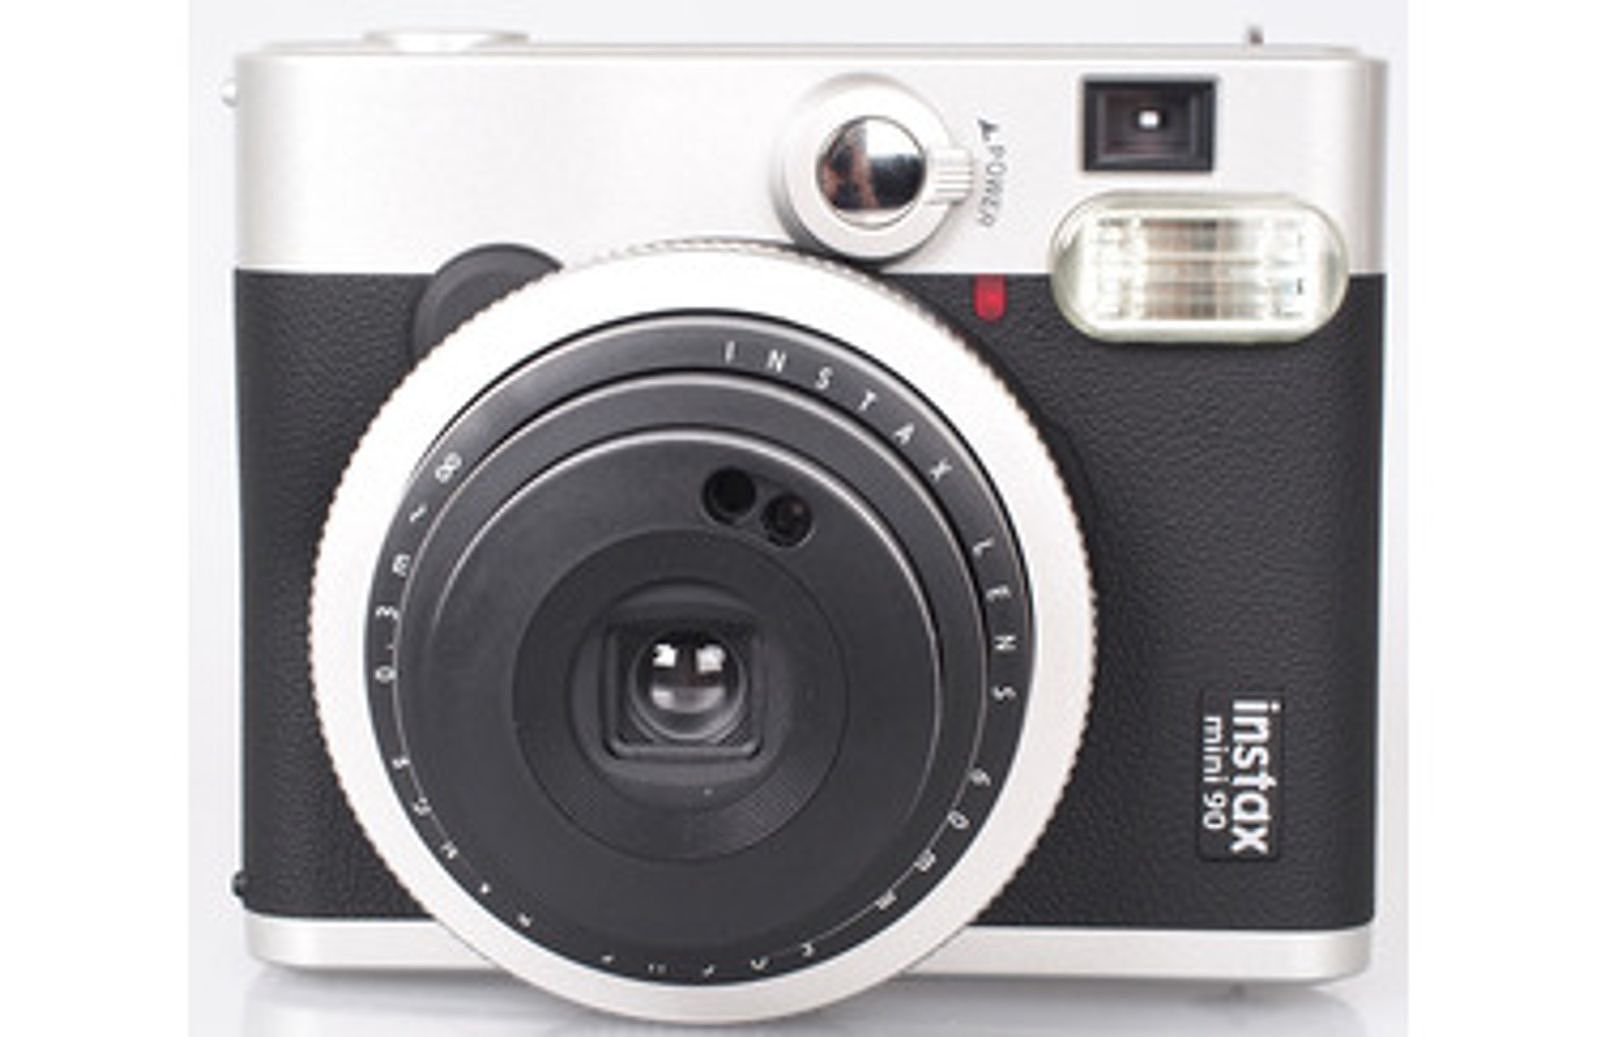 Review Máy Ảnh Fujifilm Instax Mini 90 Neo: Trải Nghiệm Nhiếp Ảnh Lấy Liền Hoàn Toàn Mới